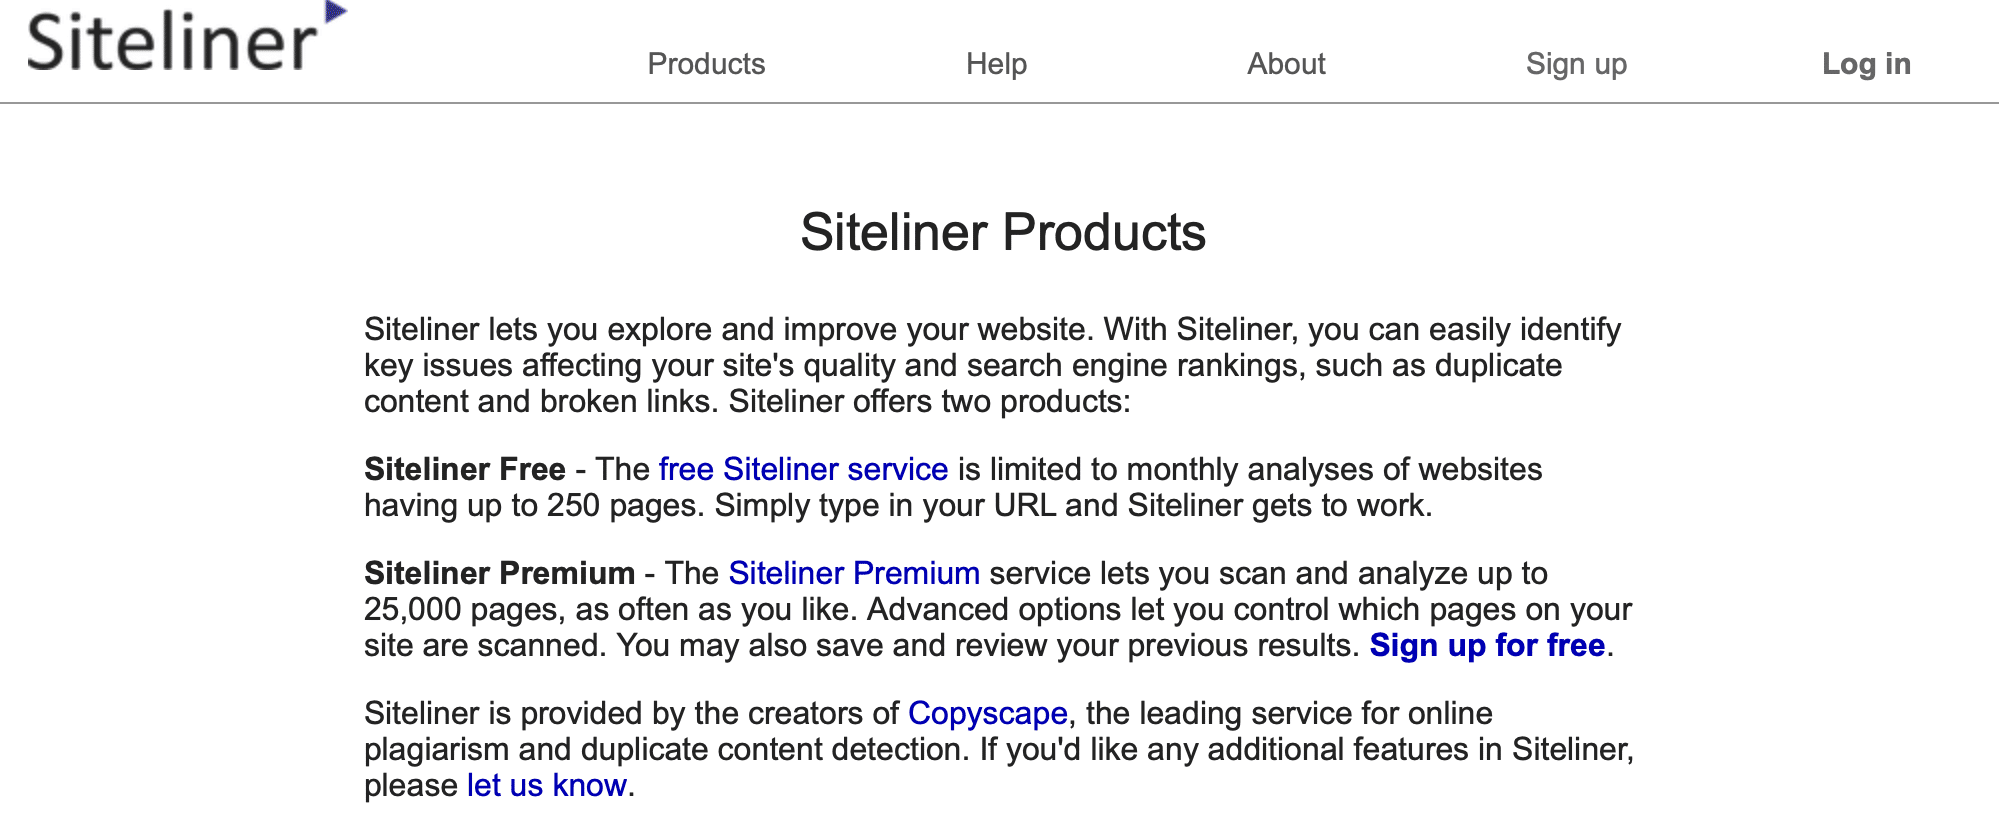 Siteliner free and premium